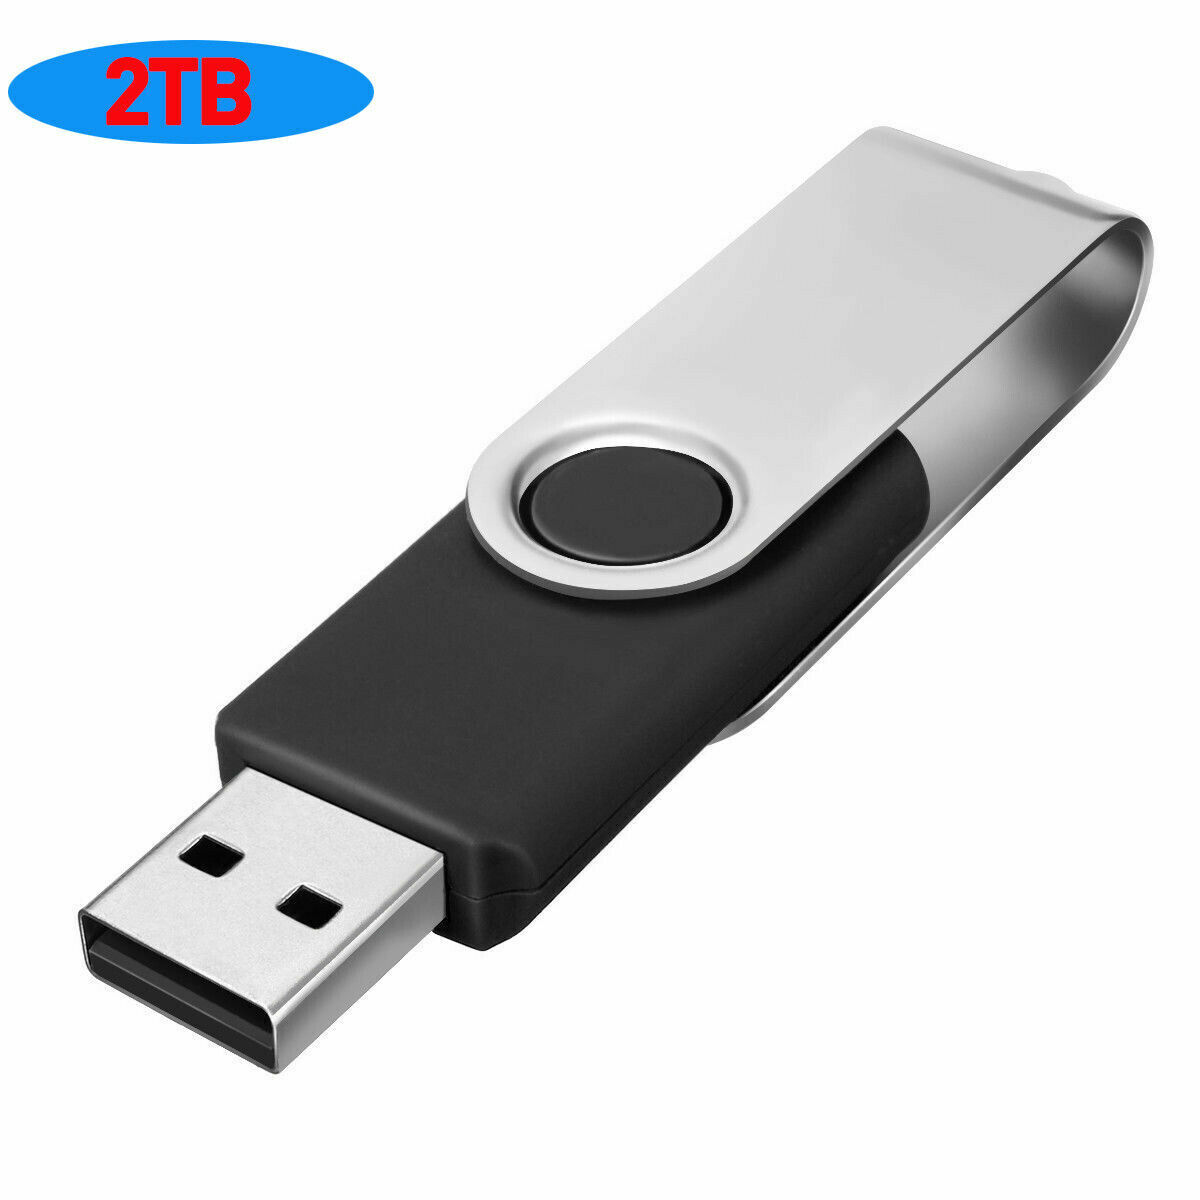 USB 2.0 Flash Drive Memory Stick Pen U Disk  Thumb Drive 2TB/512GB/128GB